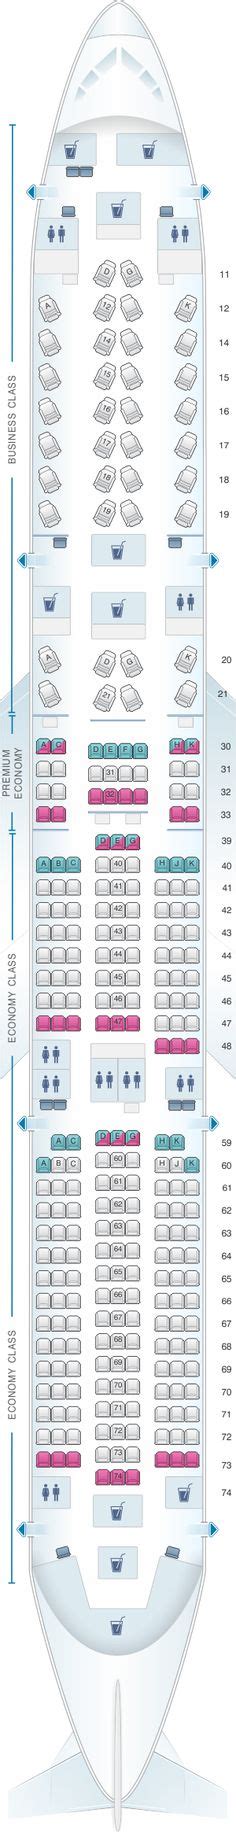 Latam Brasil Airbus A350 900 359 Seat Map Seating Charts Seating